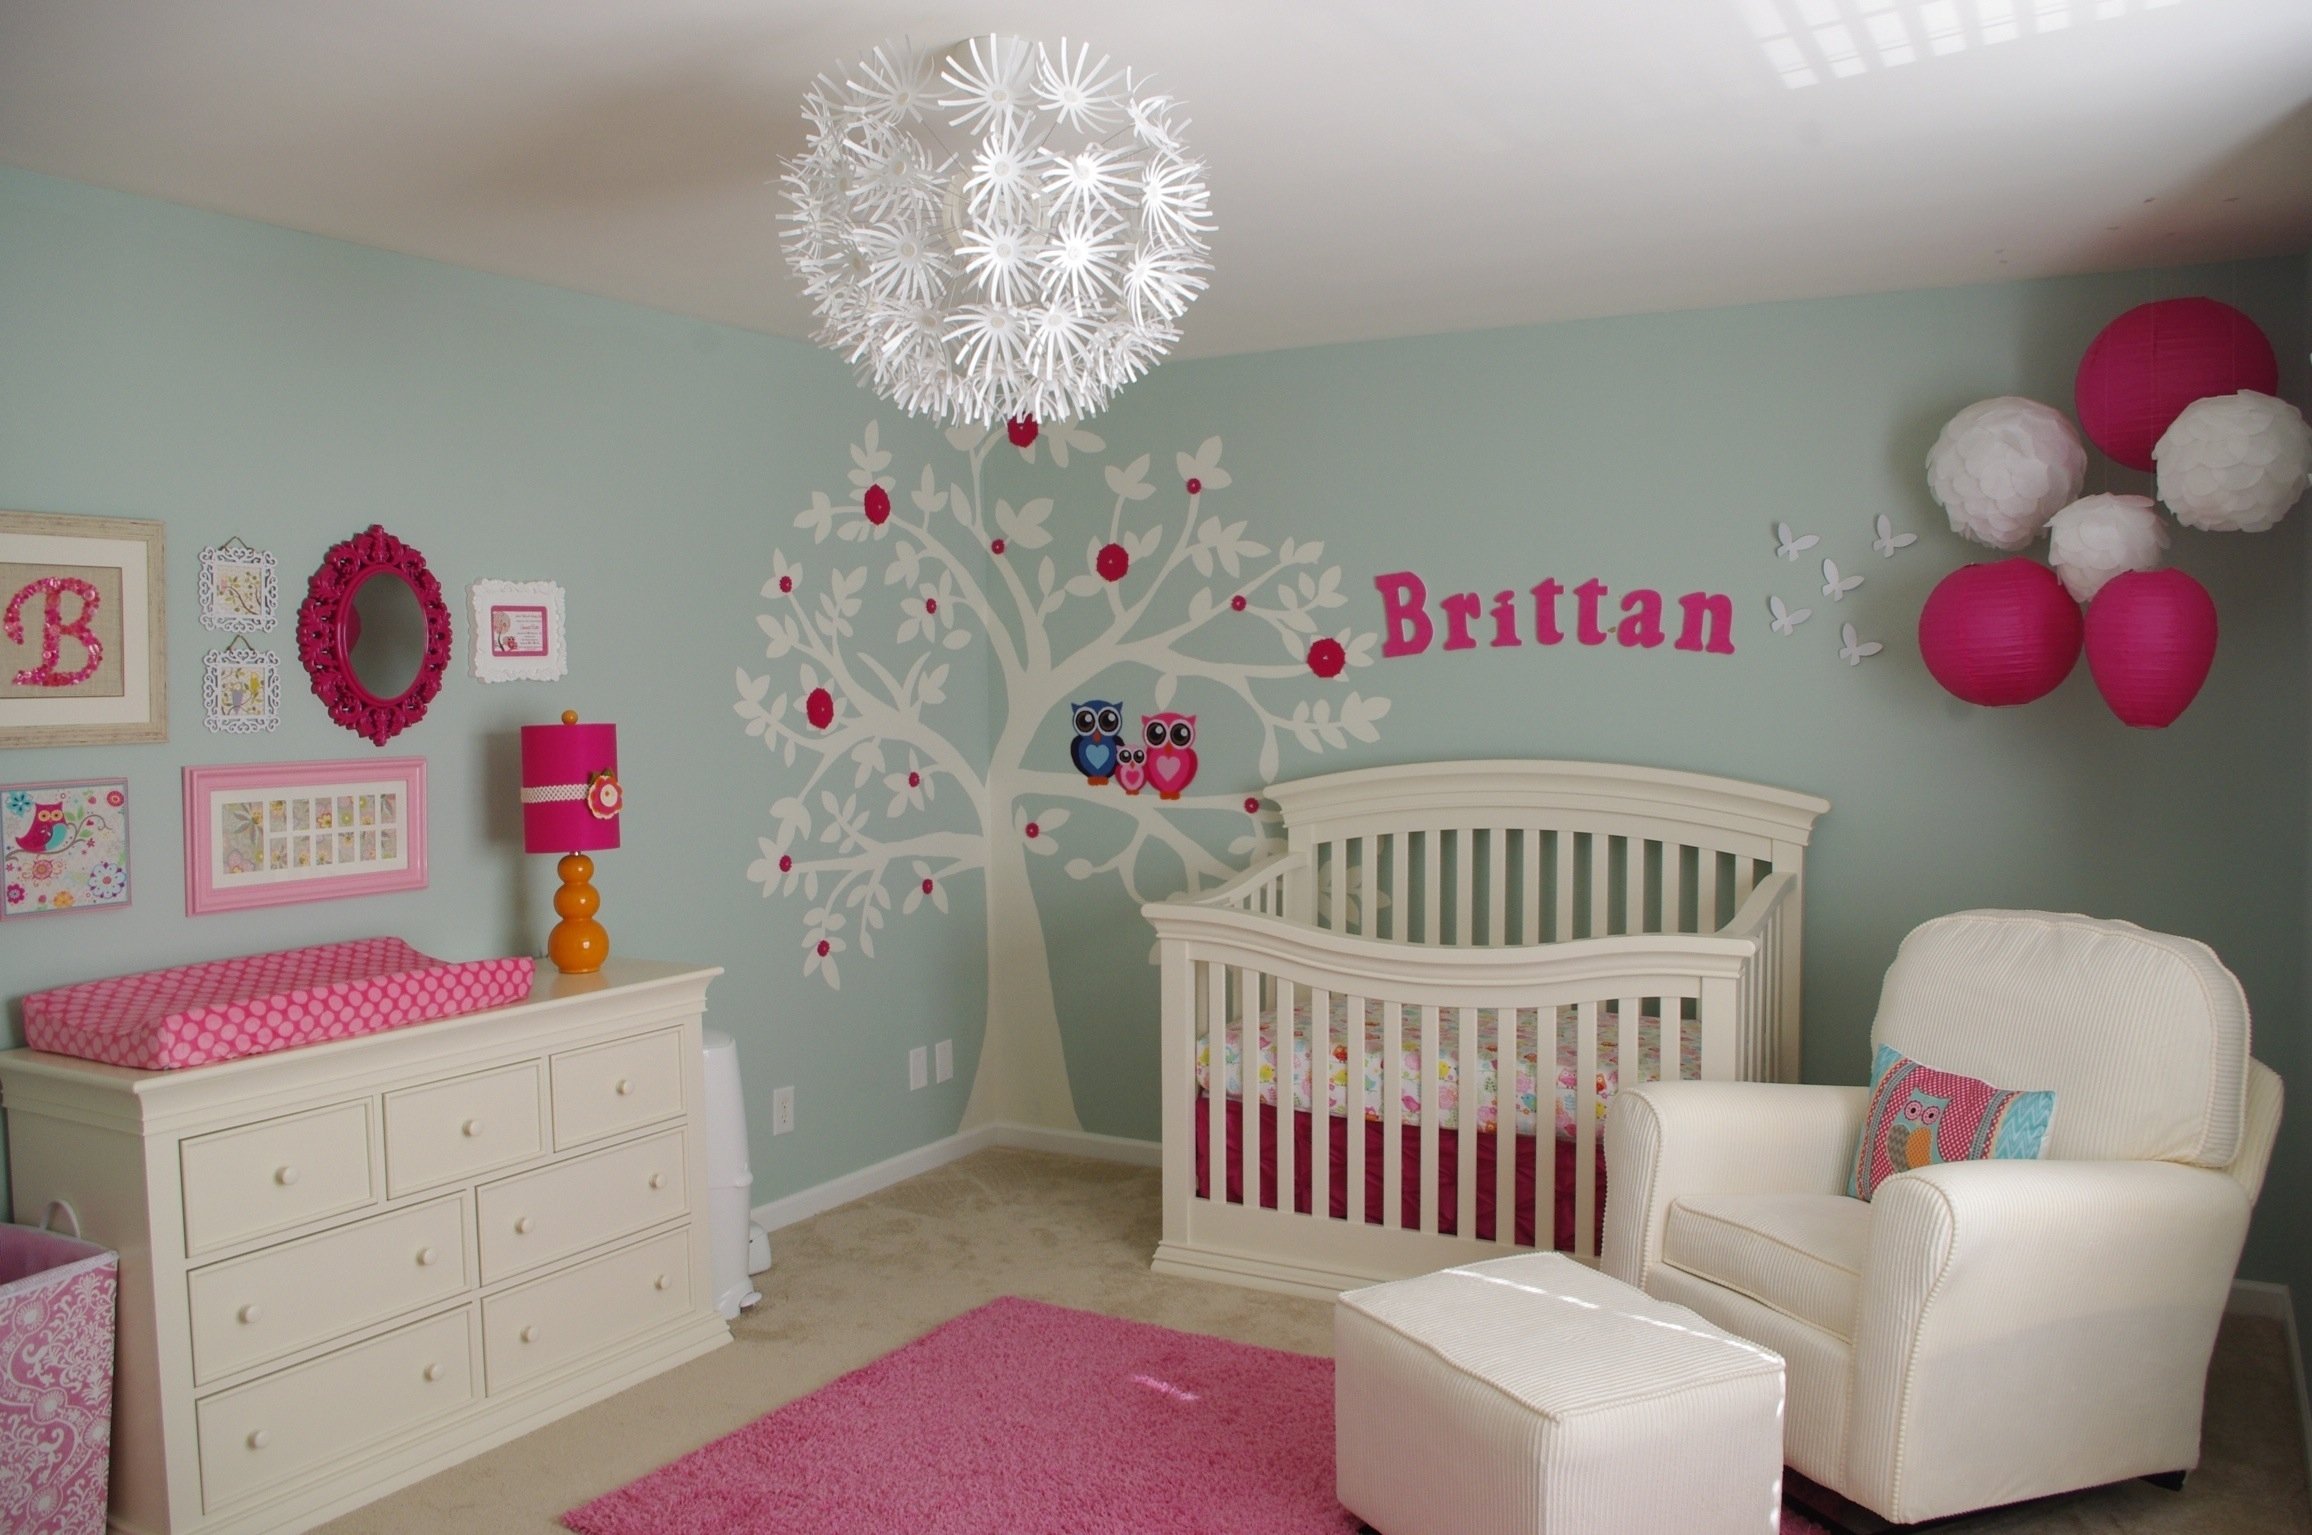 10 Beautiful Baby Girl Nursery Ideas Pinterest home decor baby nursery decorate girl room ideas cute pinterest 2022